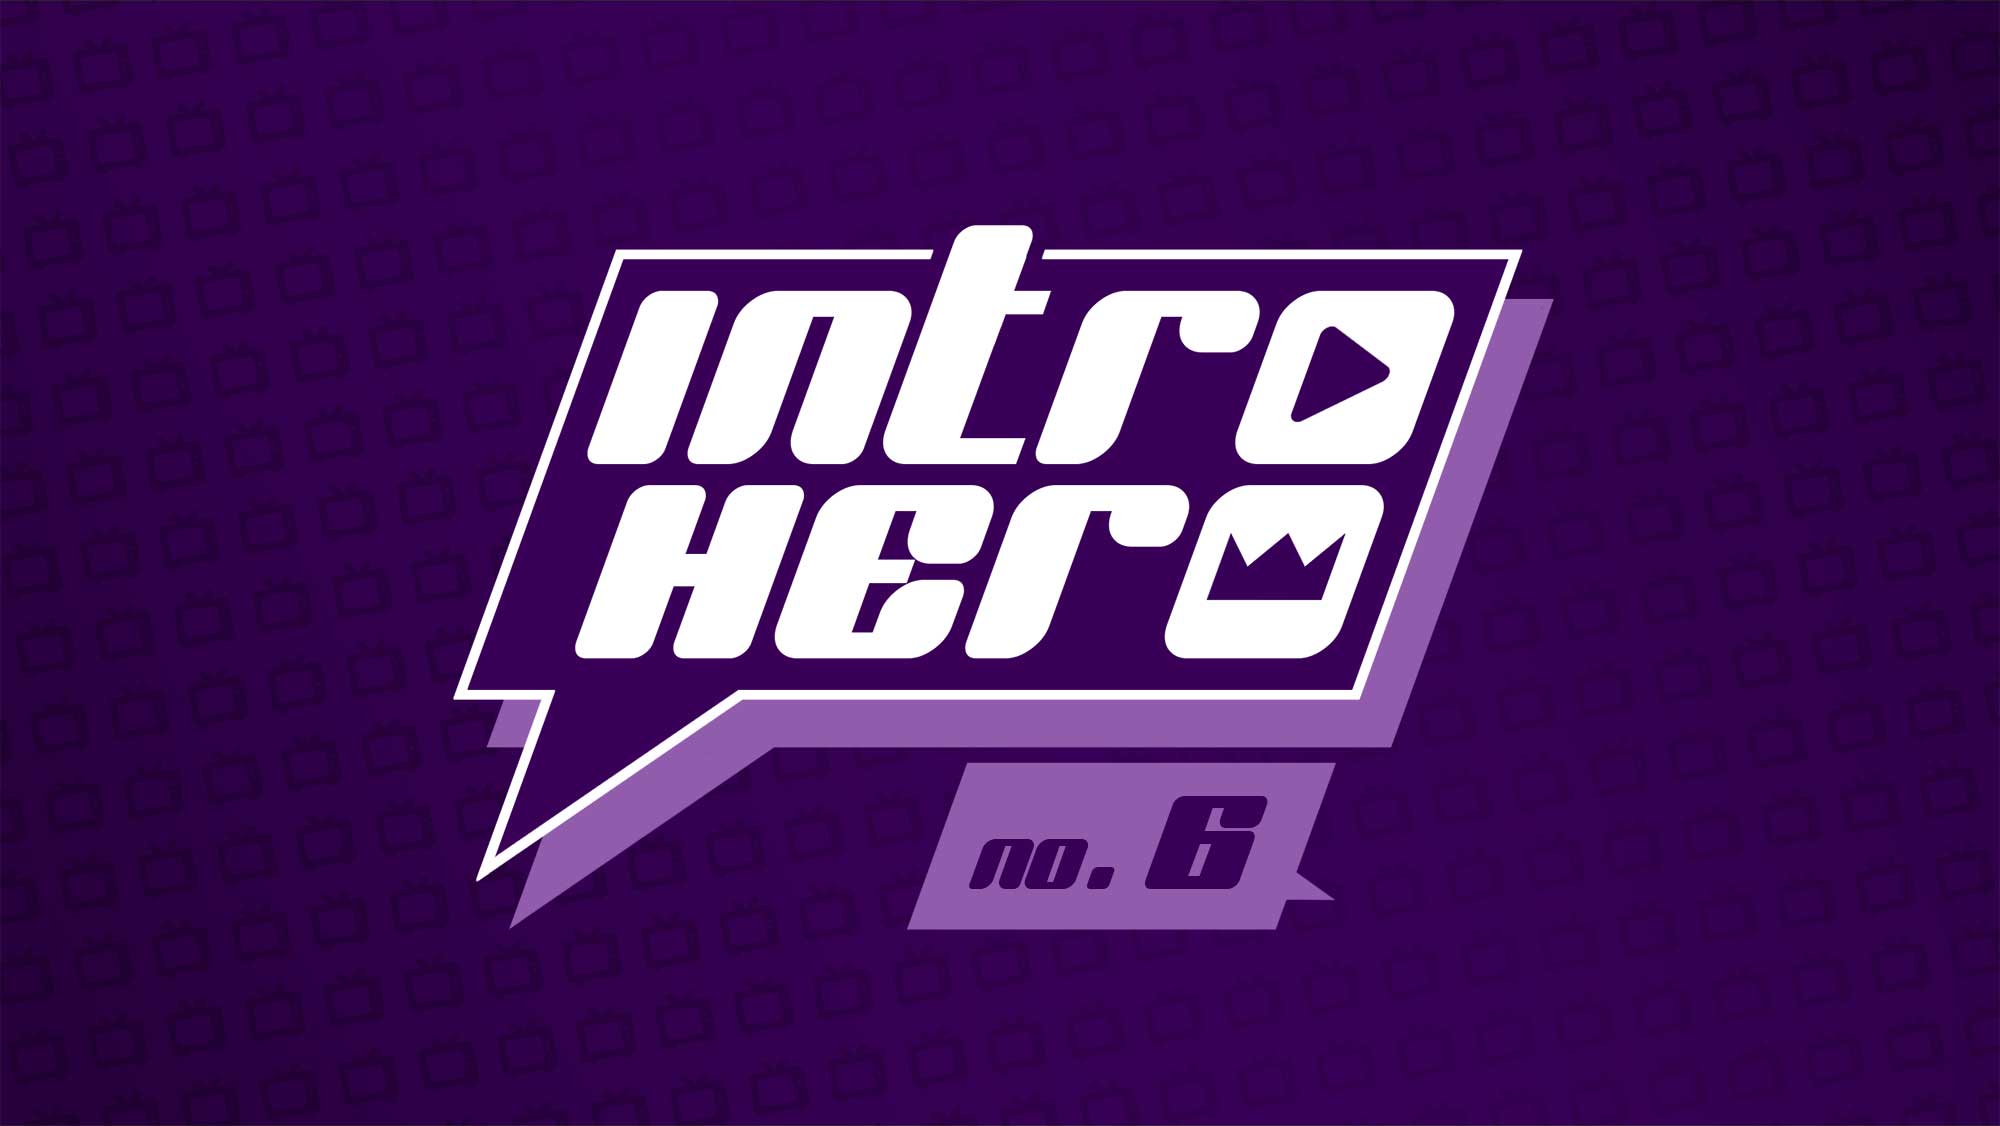 „Intro Hero“ No. 6: Errate die nacherzählten Serien-Intros